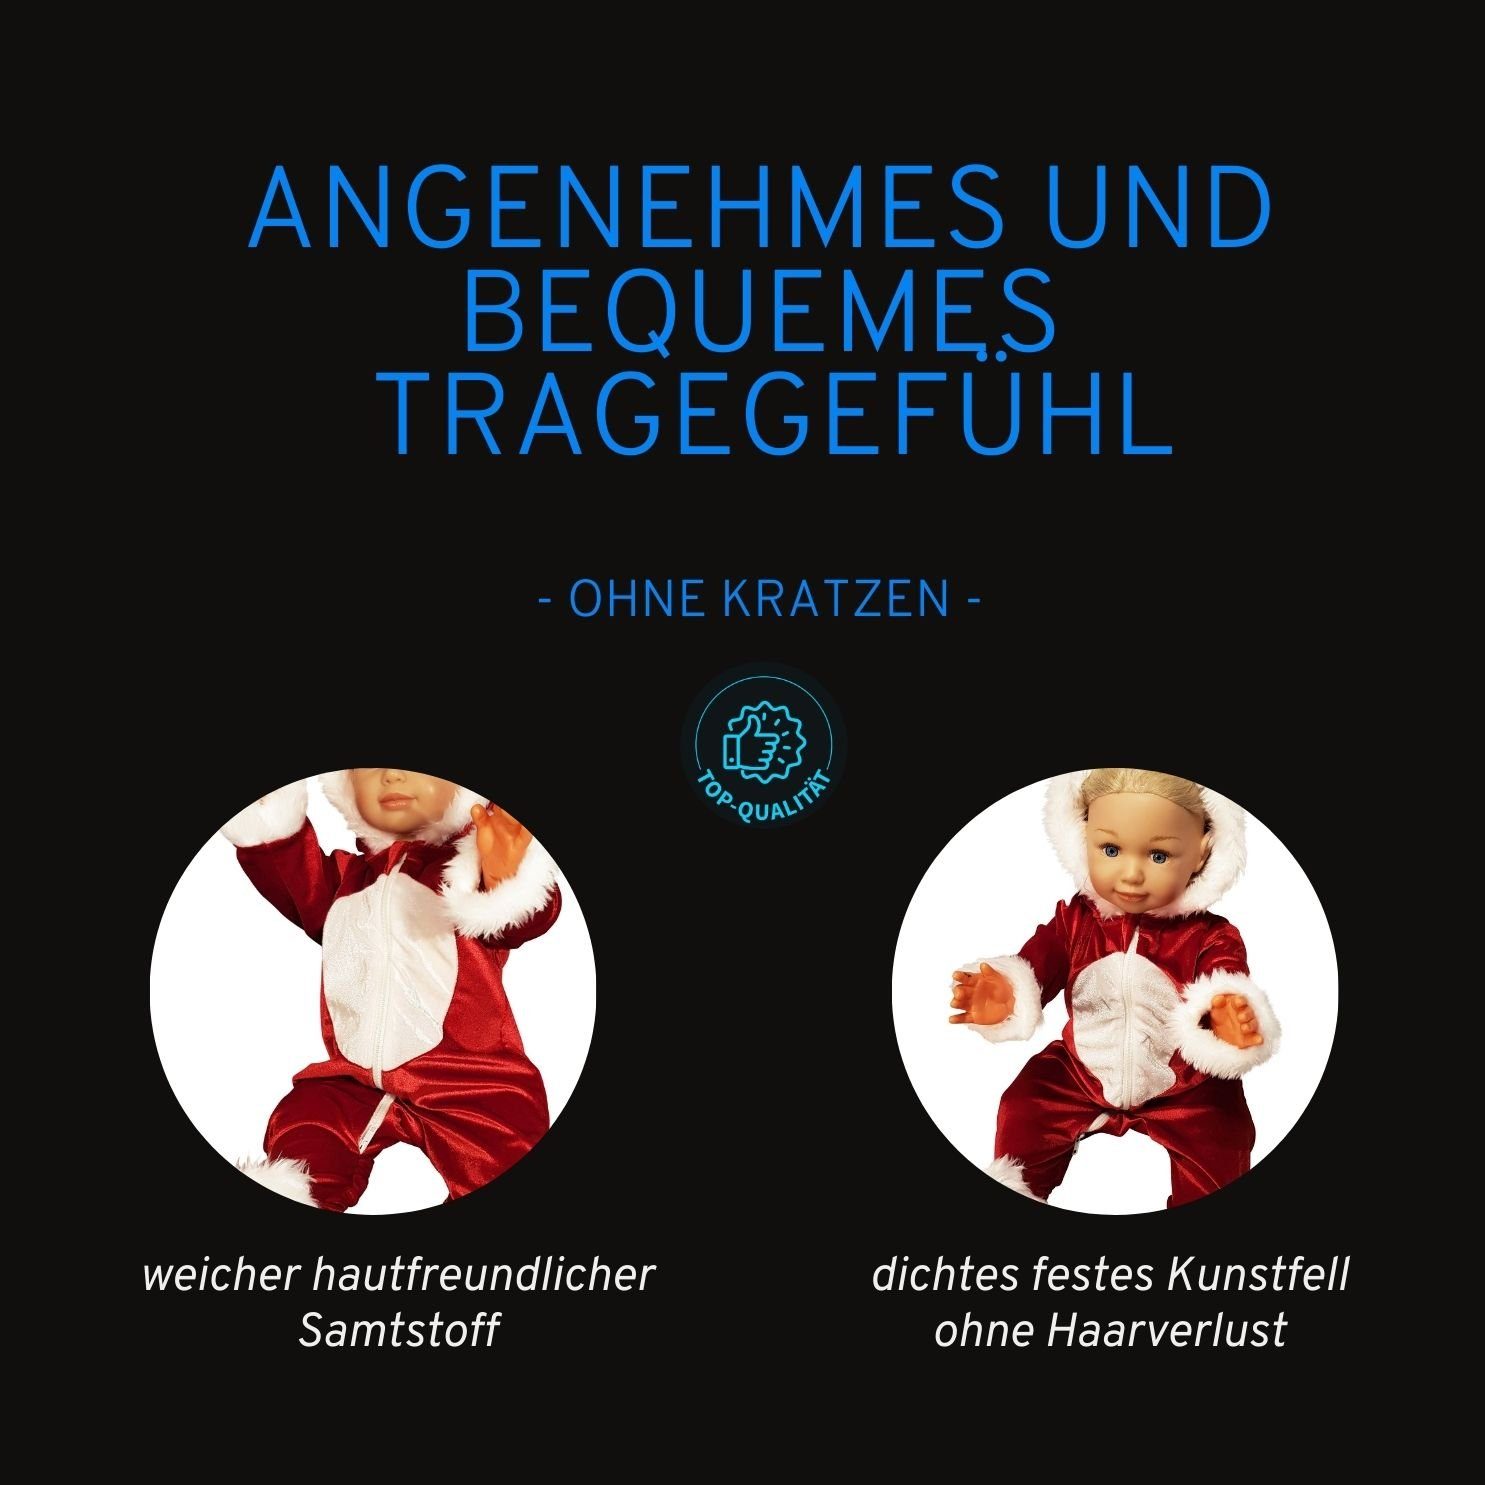 Kapuze/ Strampler Weihnachtsfotos/ Weihnachtsanzug Weihnachtsgeschenk/ / Weihnachtsdesign Weihnachtsoverall im Weihnachtsoutfit/ Zwillinge mit Berlinsel